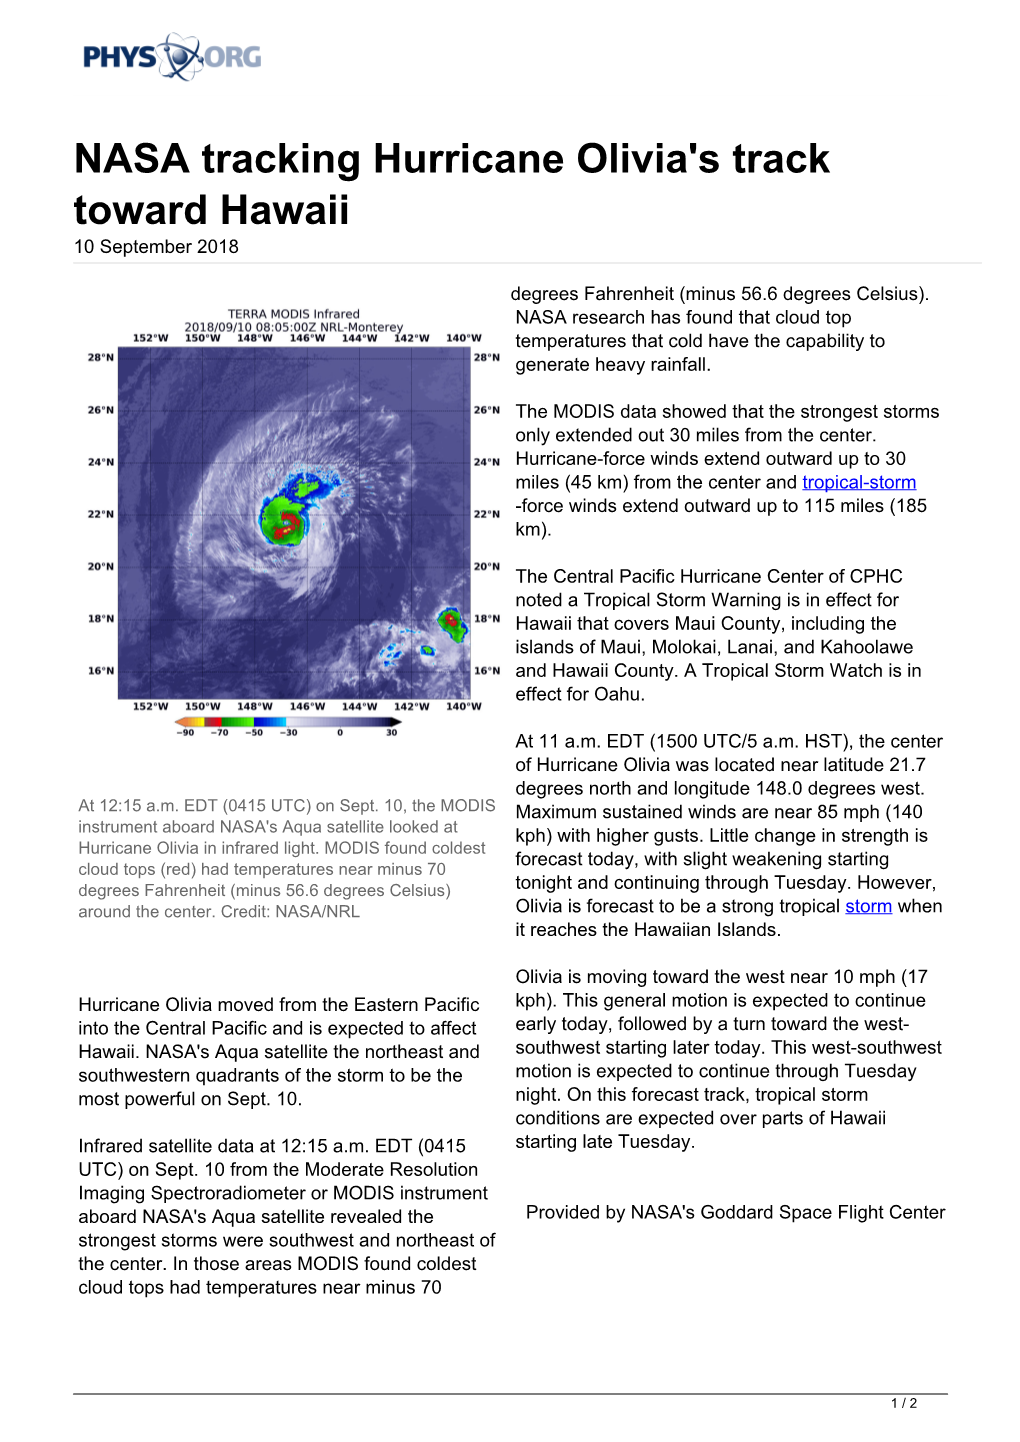 NASA Tracking Hurricane Olivia's Track Toward Hawaii 10 September 2018